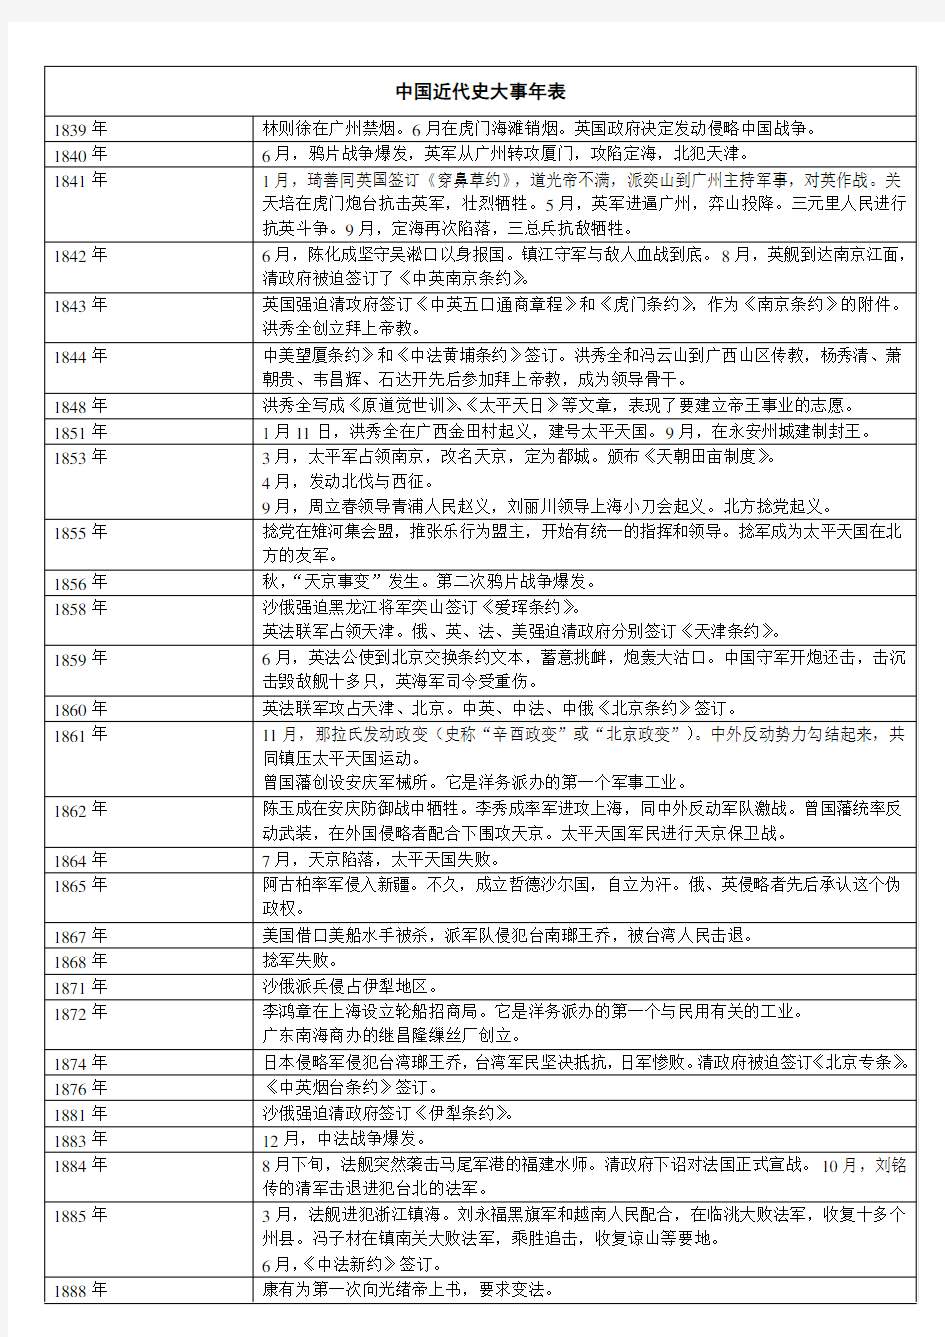 中国近代史大事年表-表格详细版